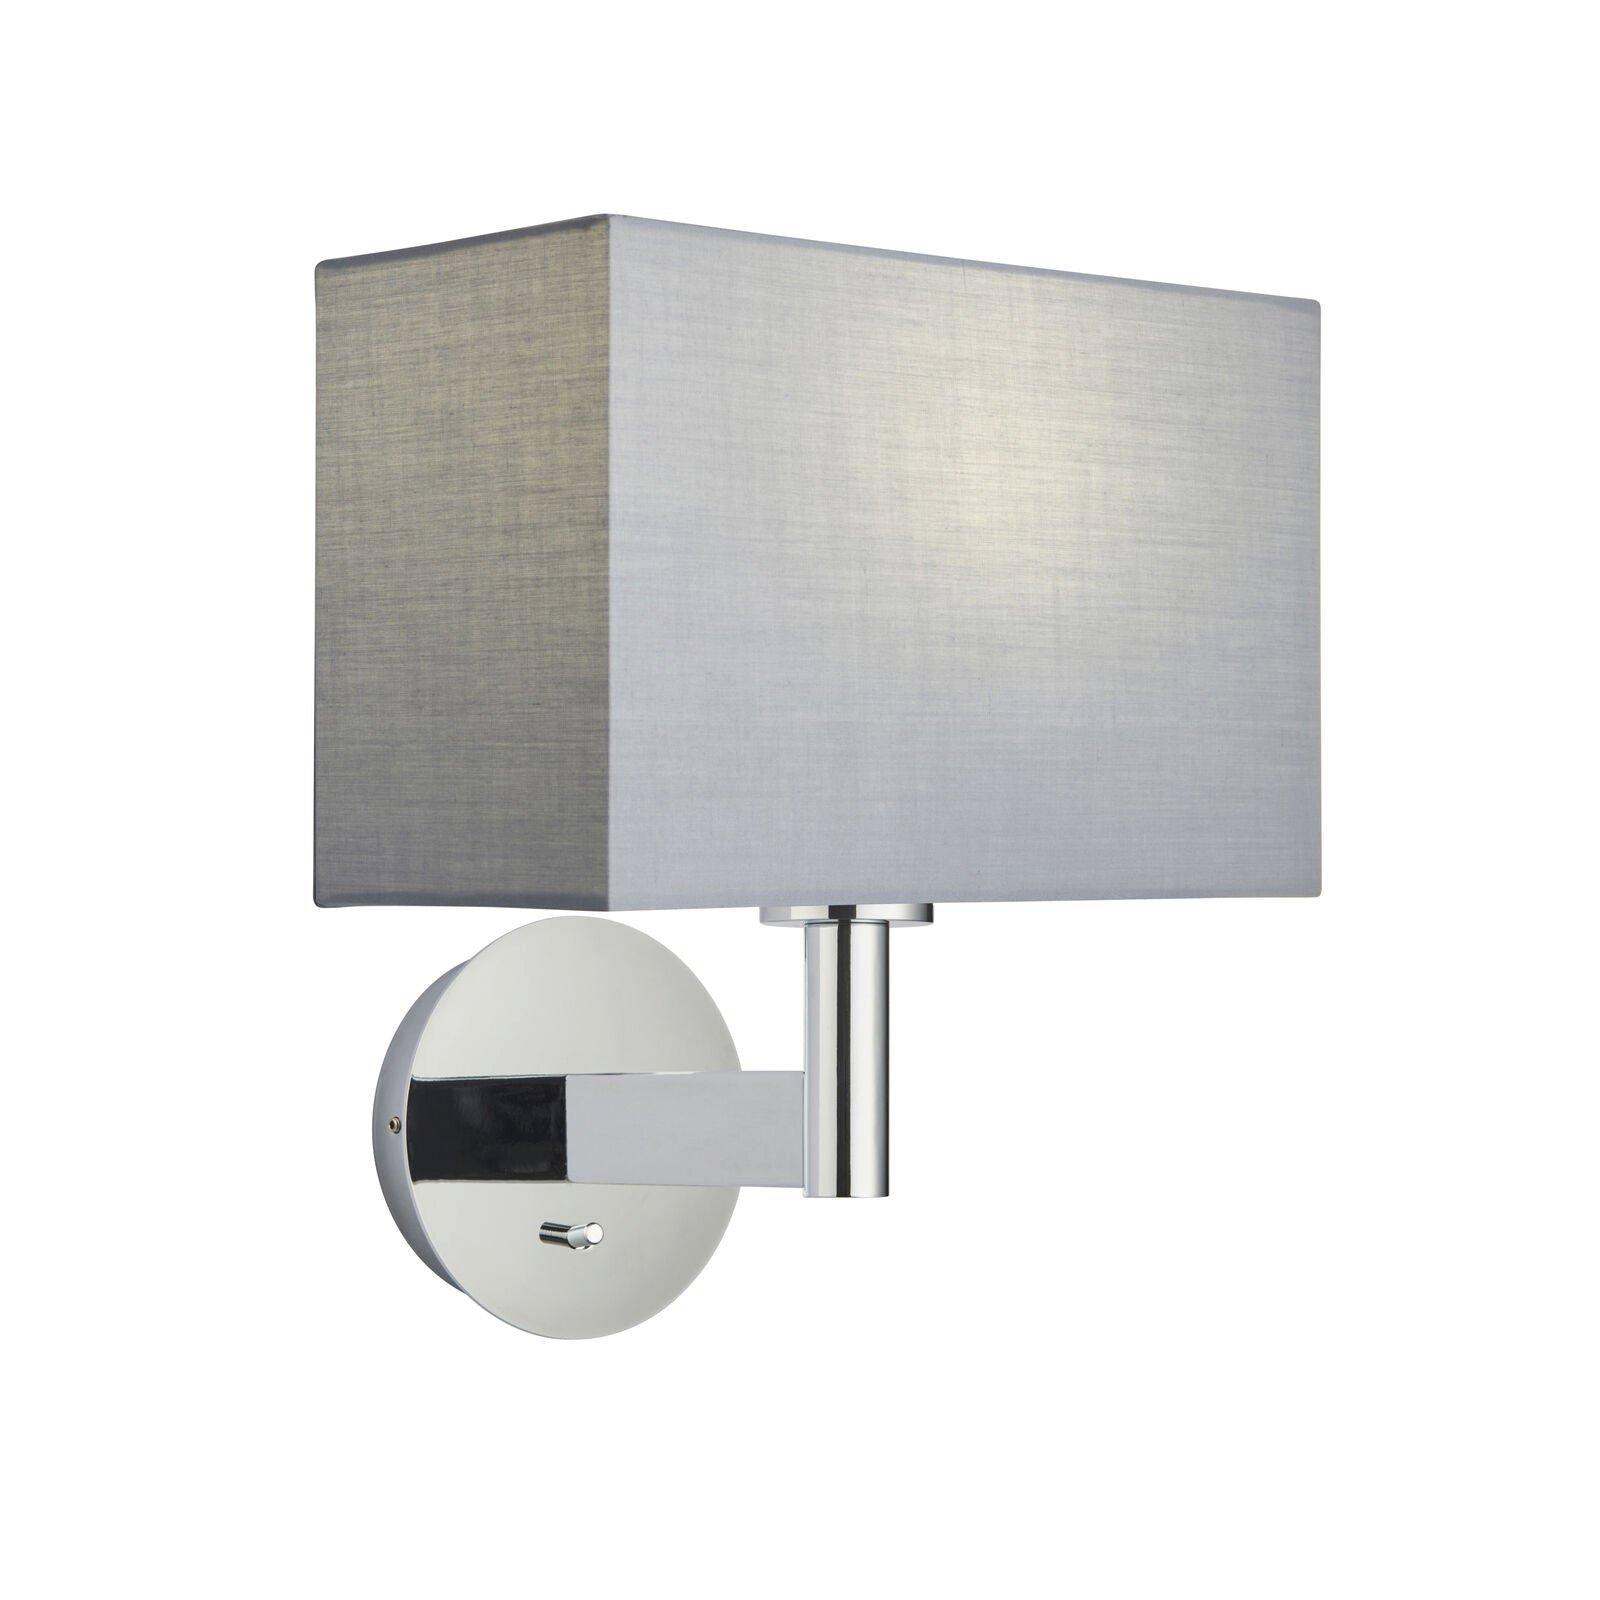 Wall Light & Shade Chrome Plate & Grey Fabric 60W E27 Living Room e10658